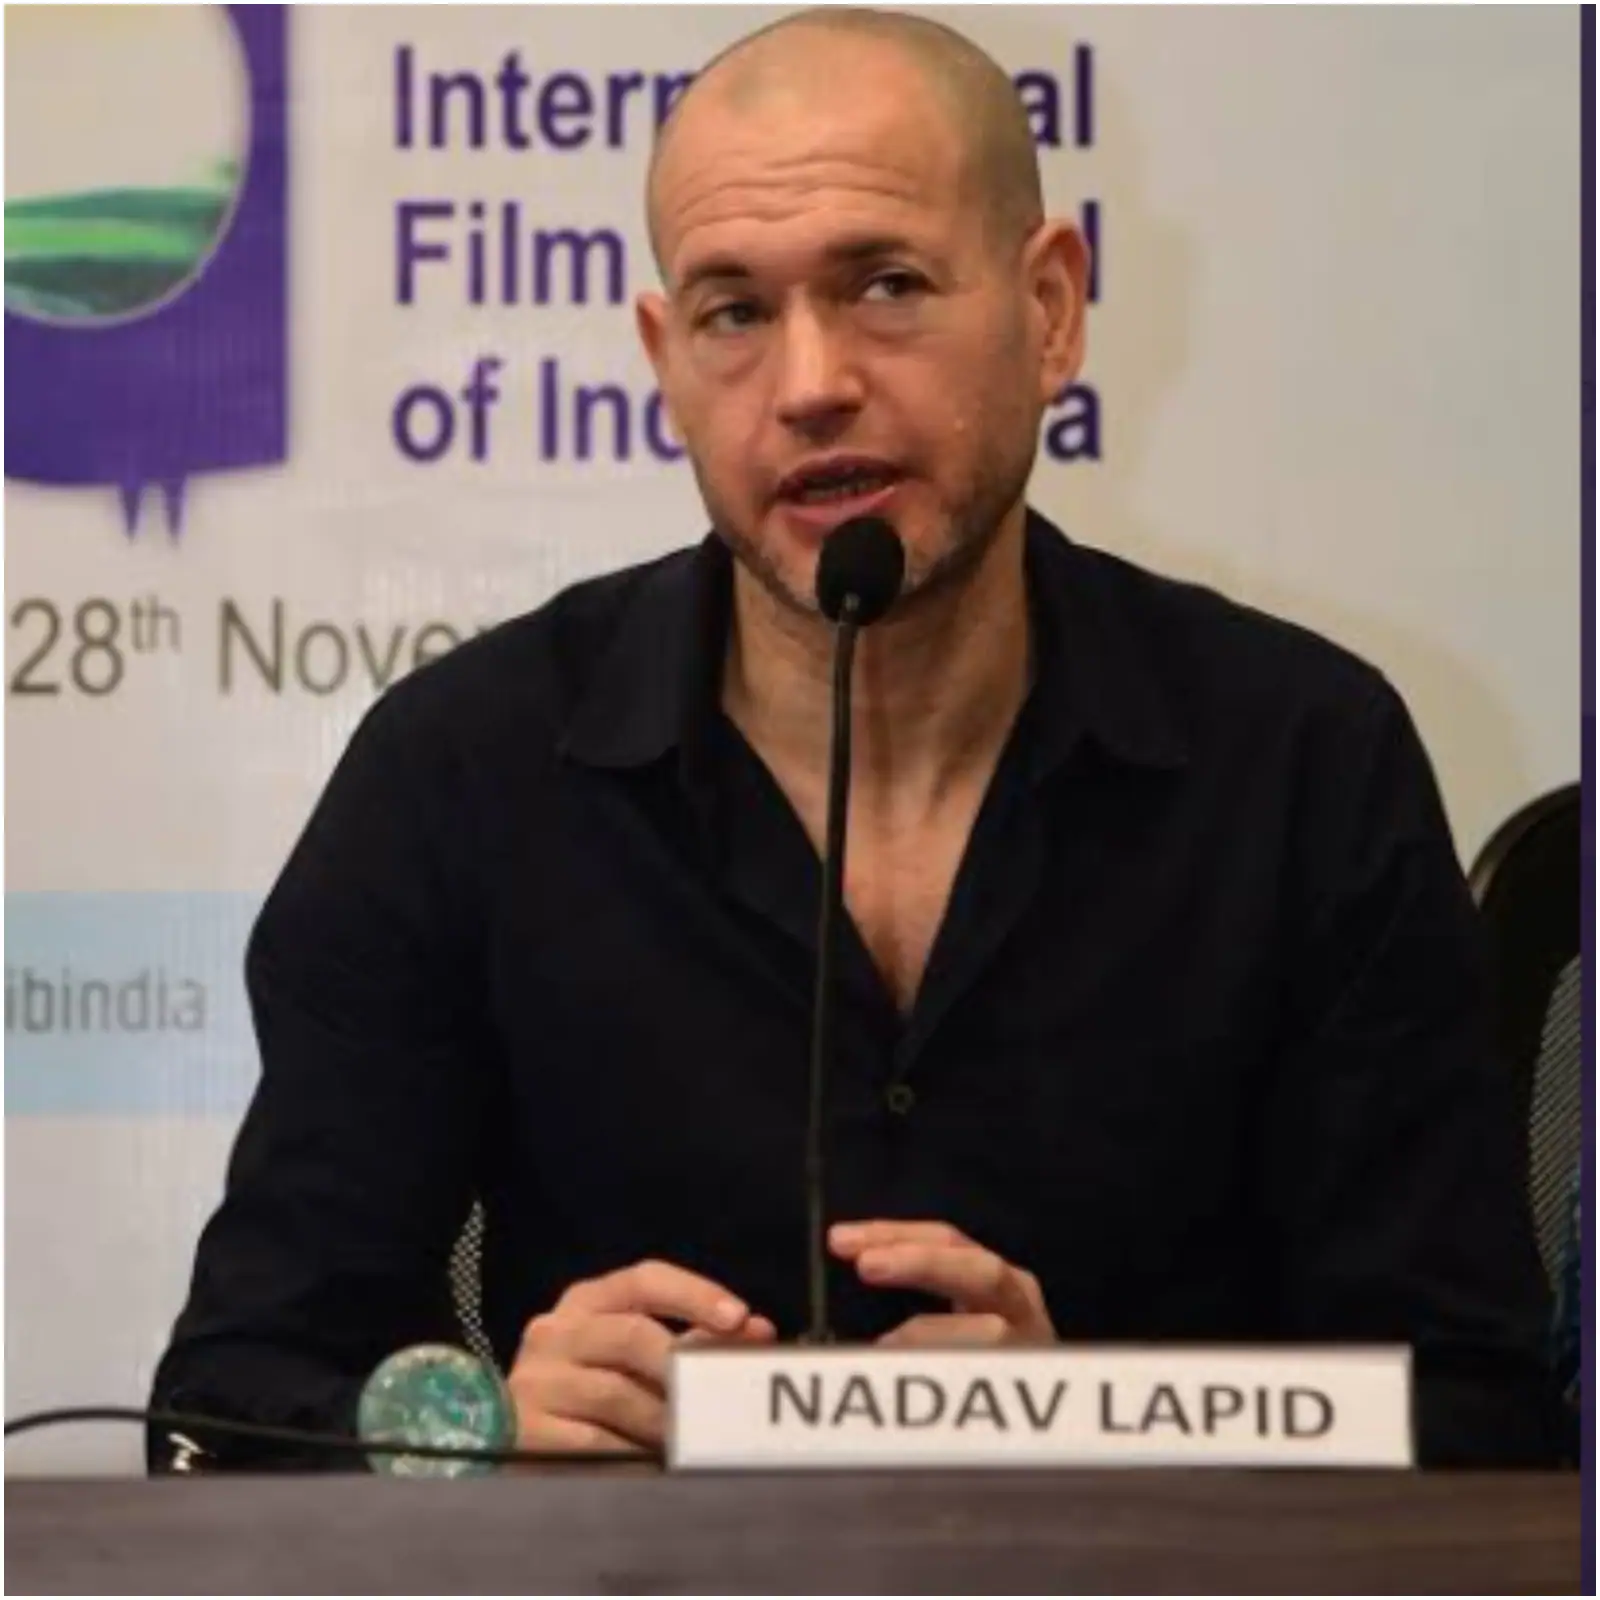 Nadav Lapid - The Kashmir Files